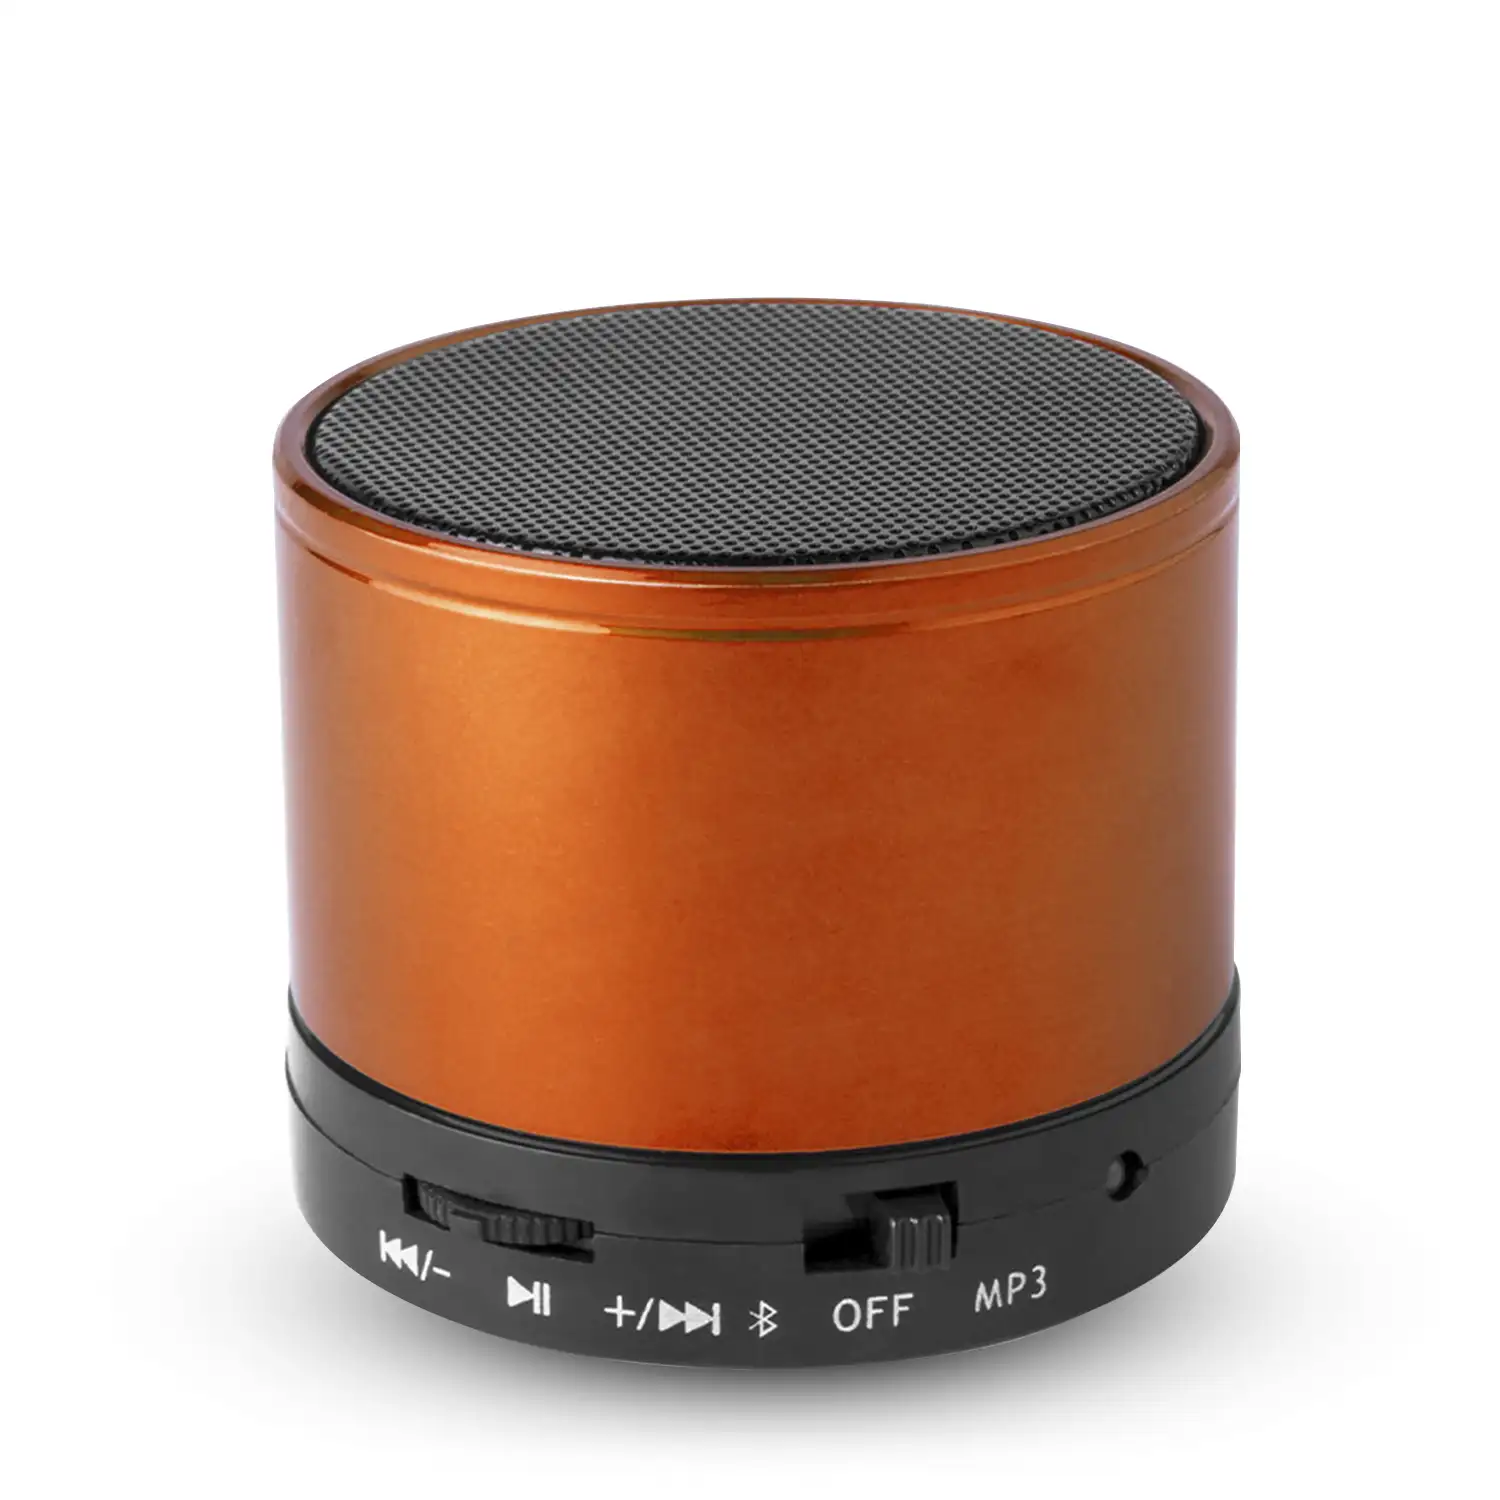 Altavoz compacto Martins Bluetooth 3.0 de 3W, con manos libres y radio FM.